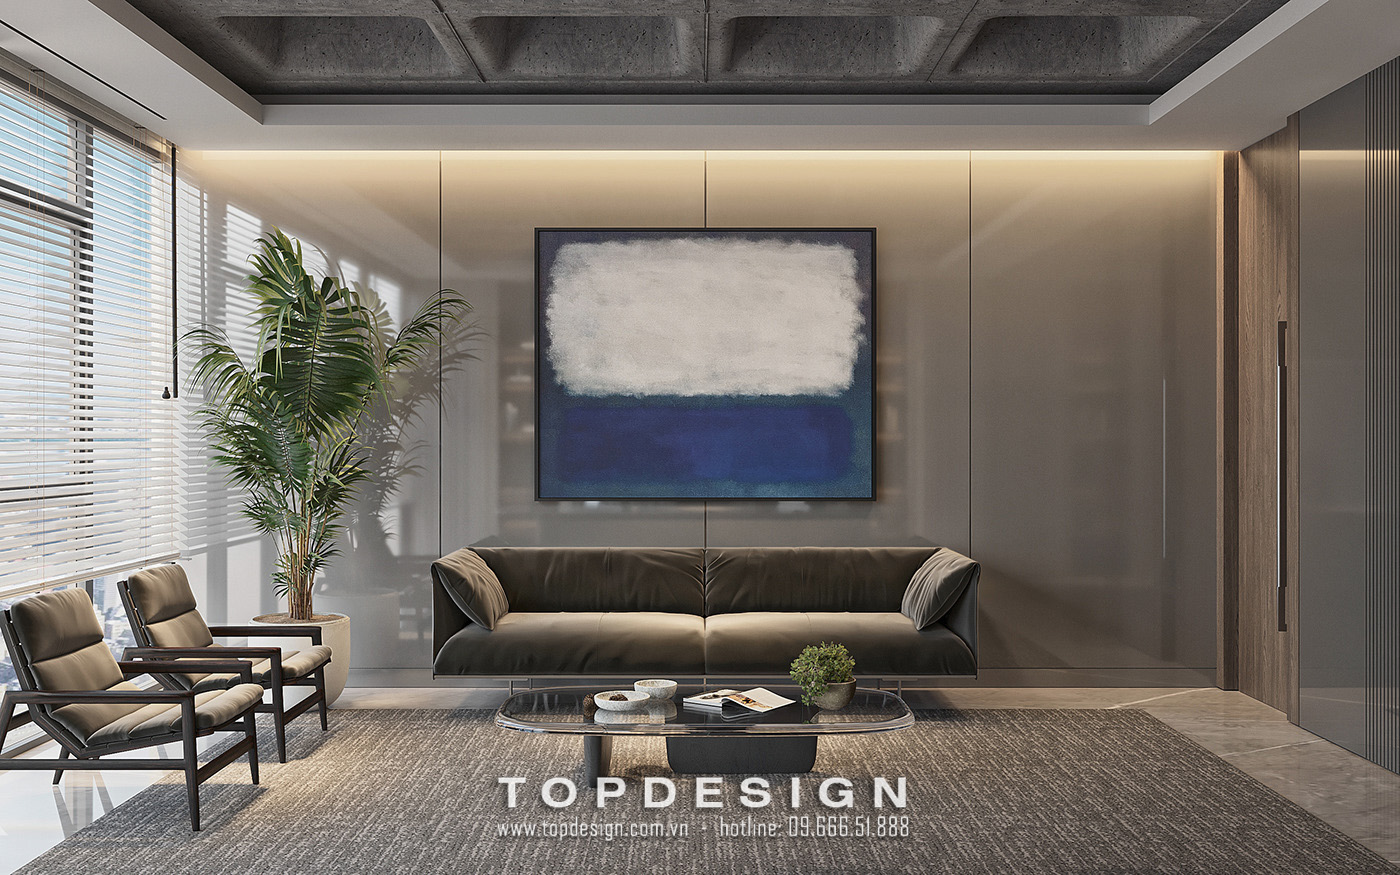 1_Thiết kế nội thất văn phòng 150m2 hiện đại - TOPDESIGN